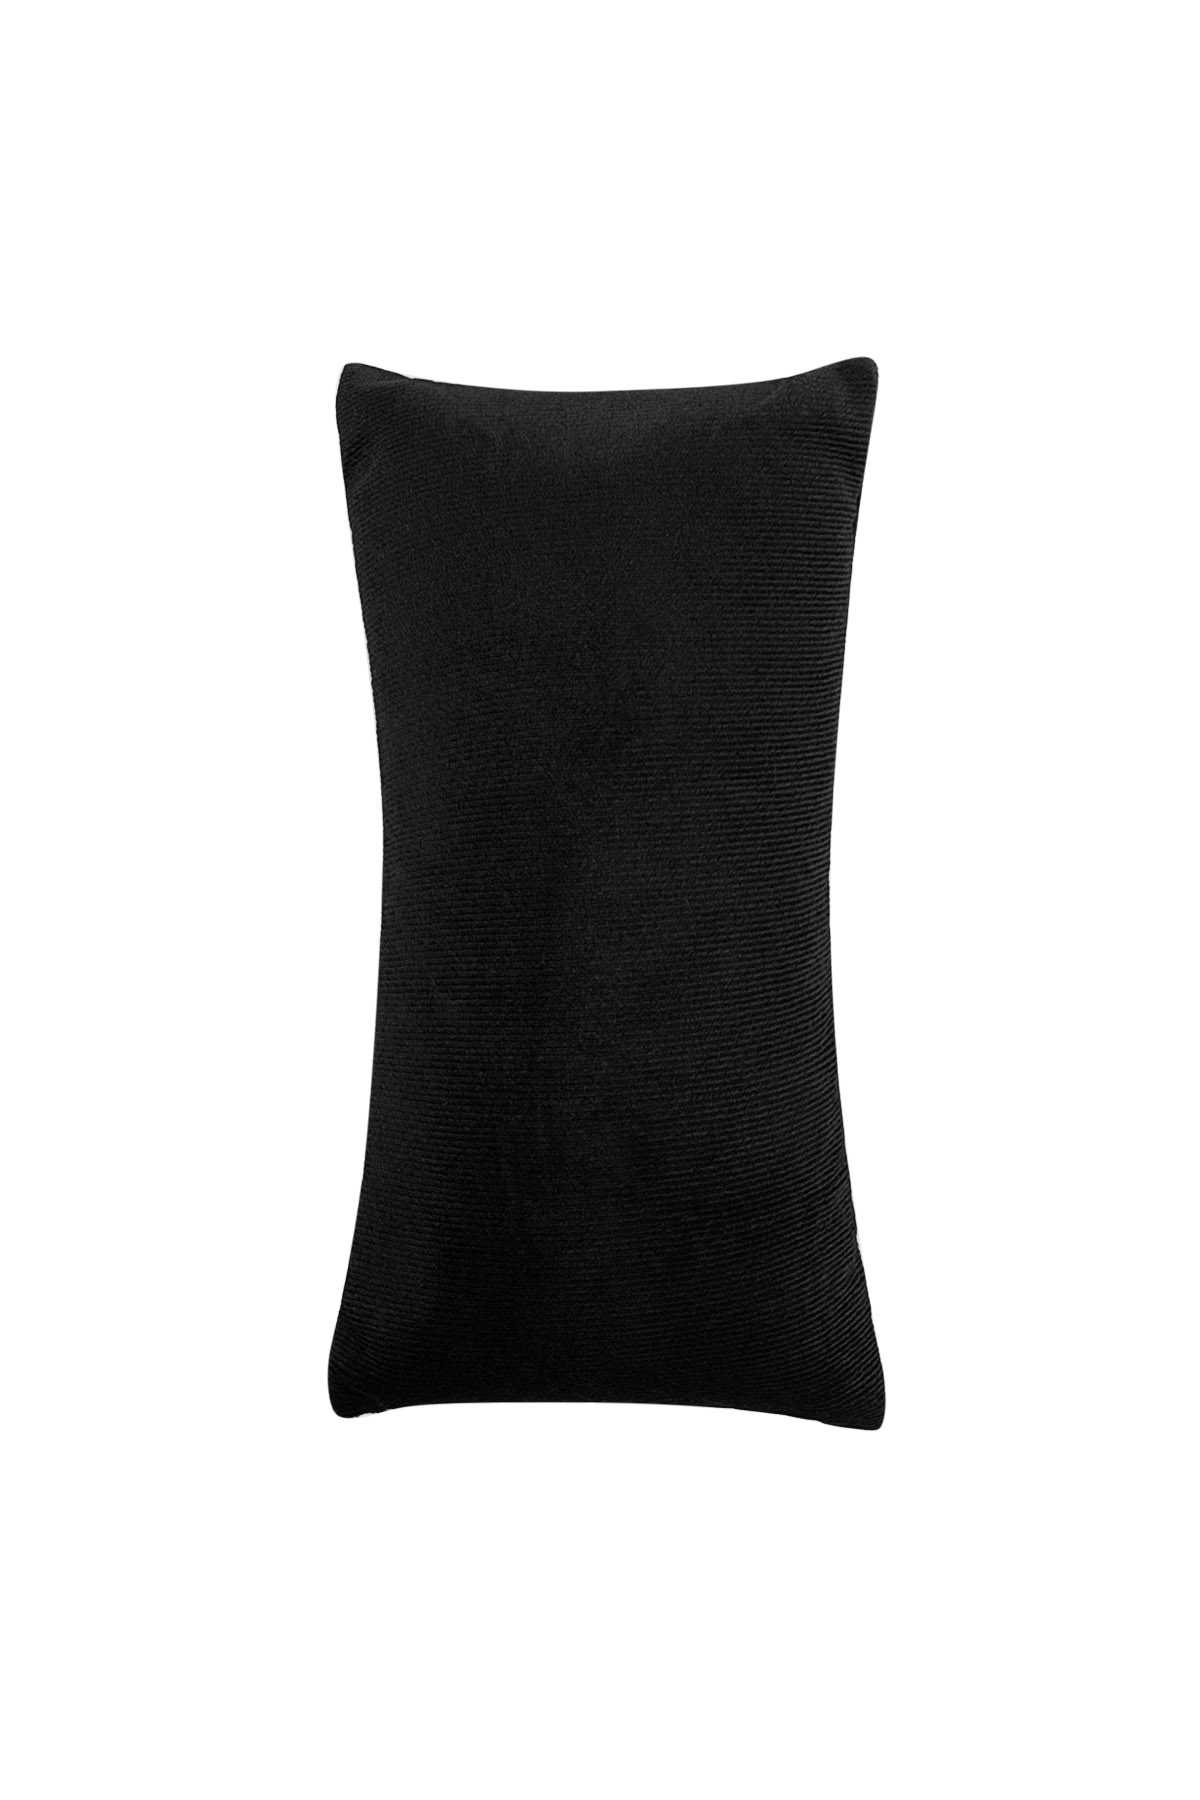 Basit bilezik yastık ekranı - siyah  h5 